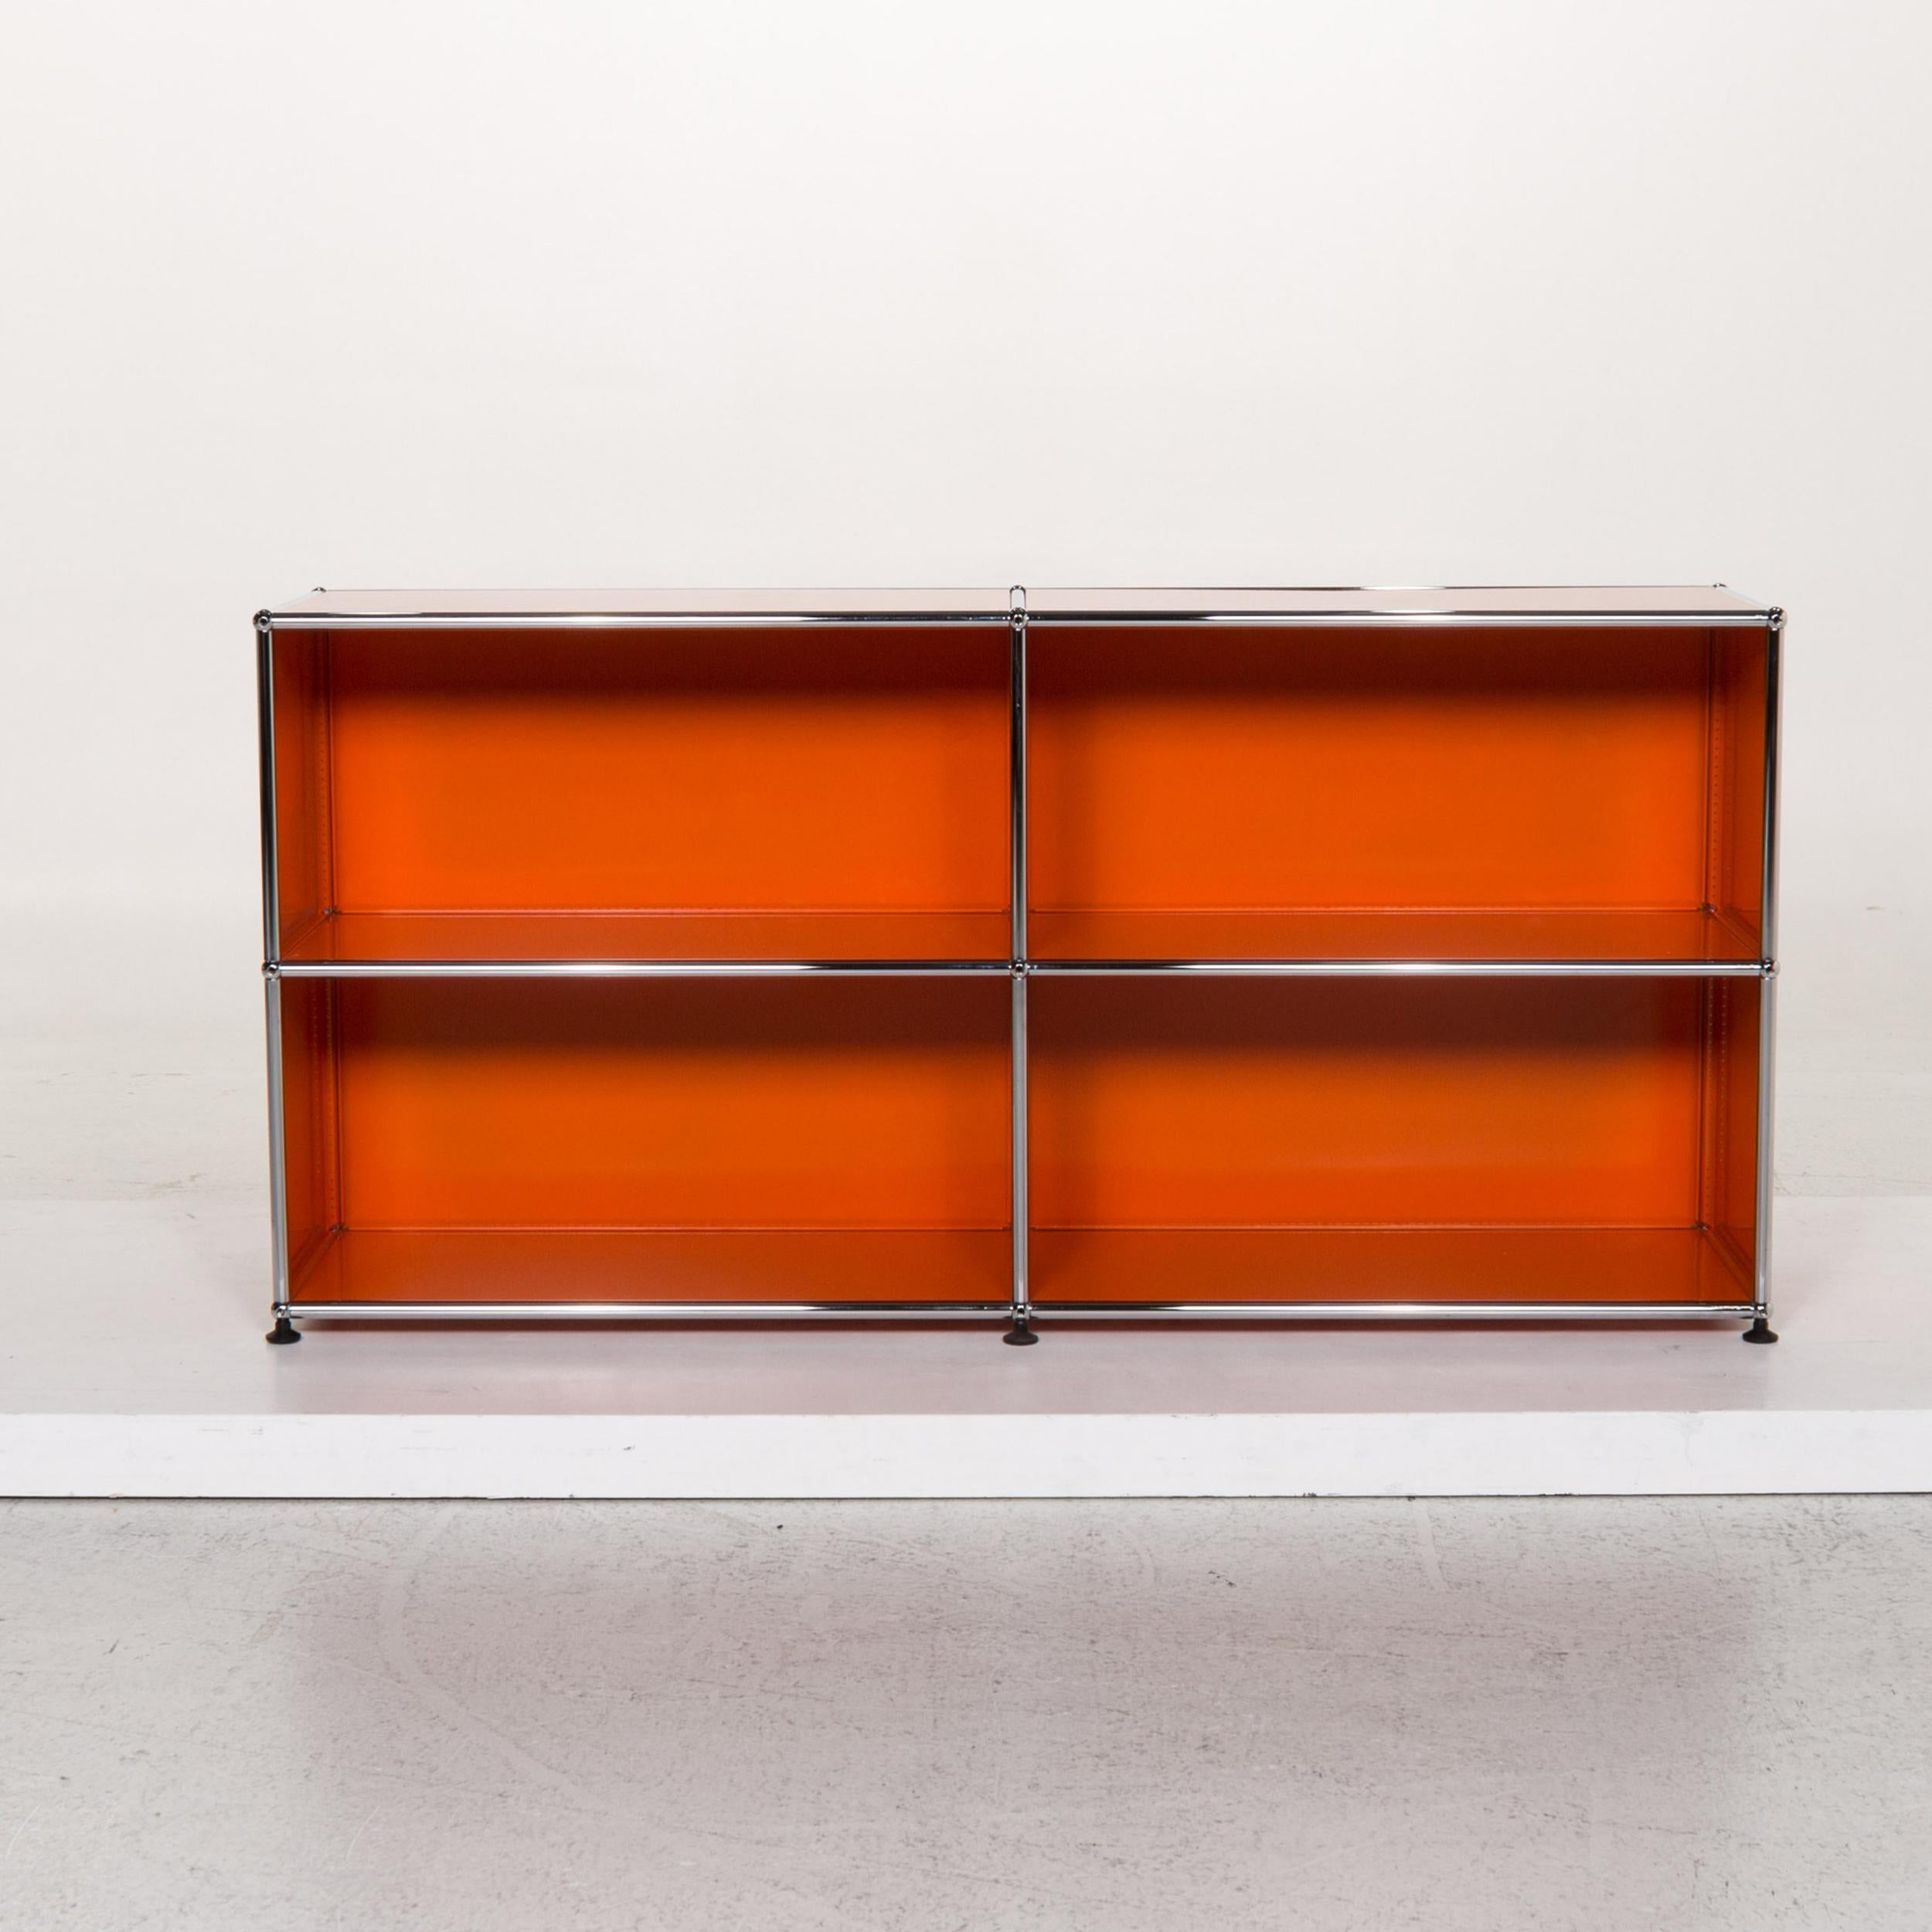 Contemporary USM Haller Metal Sideboard Orange Office Furniture Shelf